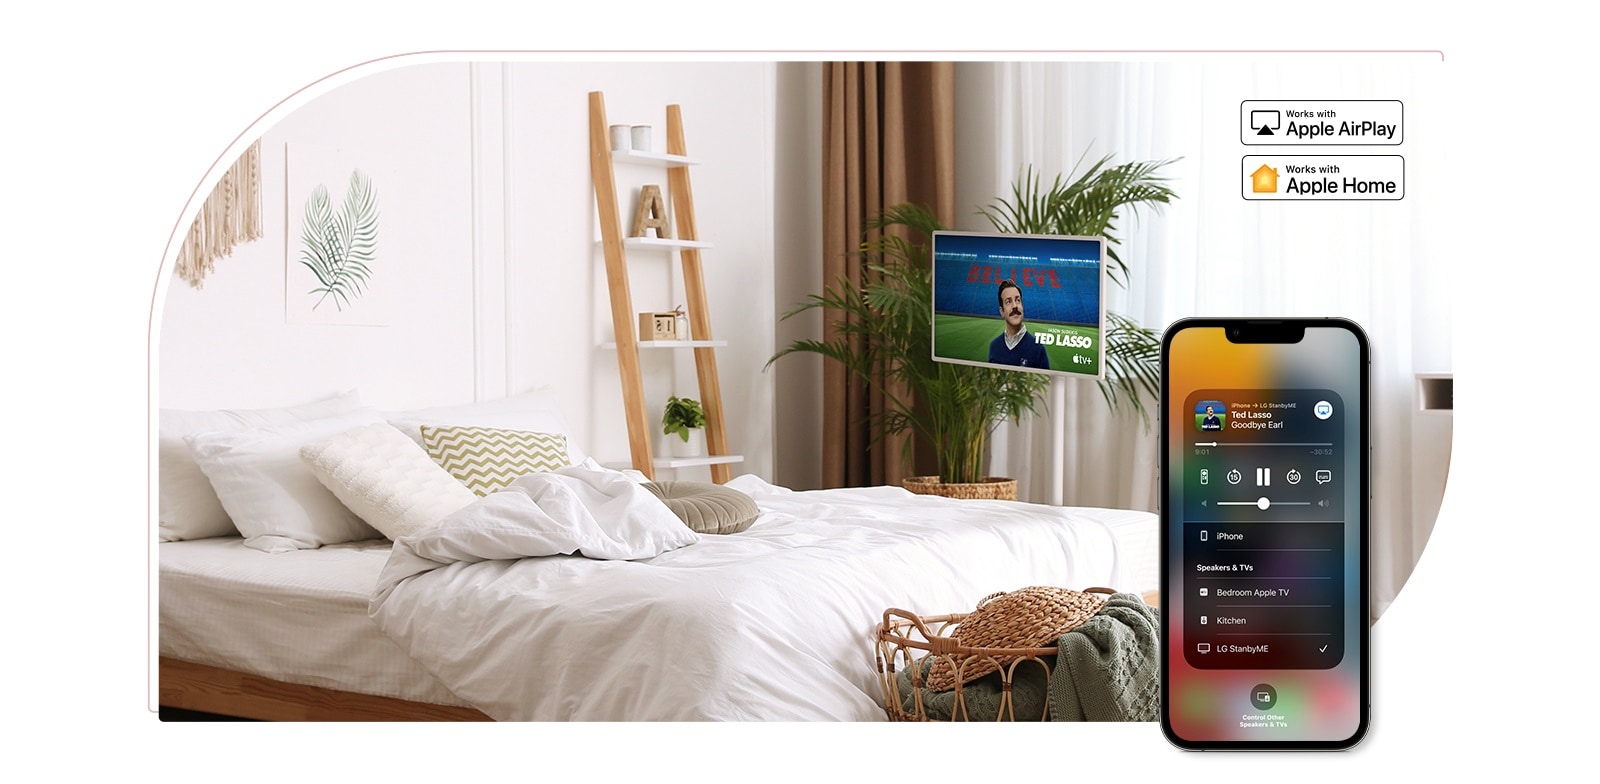 TV được đặt trong phòng ngủ ấm cúng và màn hình hiển thị chương trình truyền hình - TED LASSO. Có một thiết bị di động trên cùng một hình ảnh hiển thị giao diện người dùng AirPlay trên màn hình. Có logo Apple AirPlay và logo Apple HomeKit được đặt ở góc trên bên phải của hình ảnh.